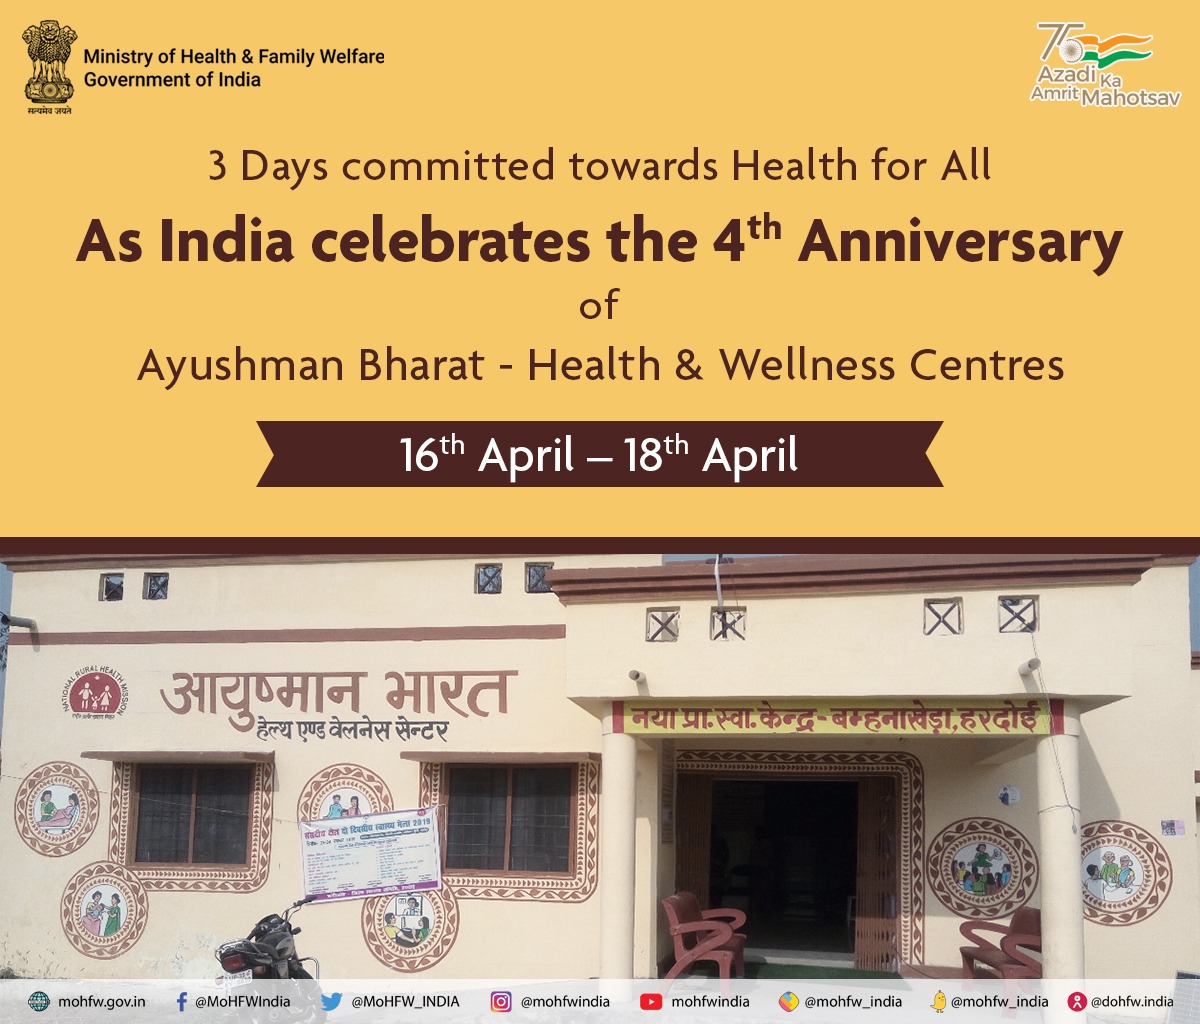 भारत ने आयुष्मान भारत की चौथी वर्षगांठ मनाई -स्वास्थ्य और कल्याण केंद्र |(16th April to 18th April)